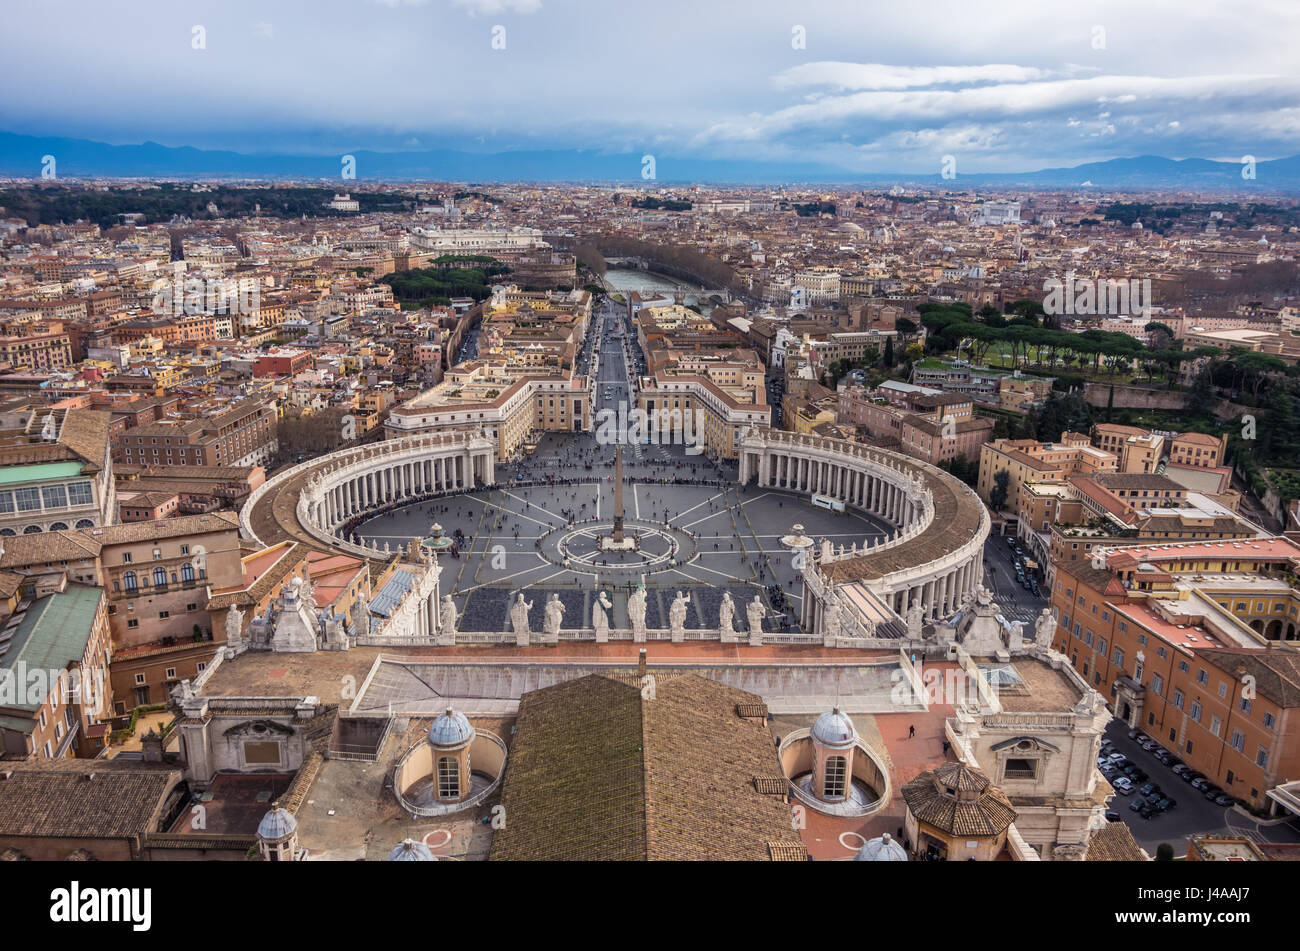 Piazza San Pietro visto dalla cupola della Basilica di San Pietro in Vaticano. Foto Stock